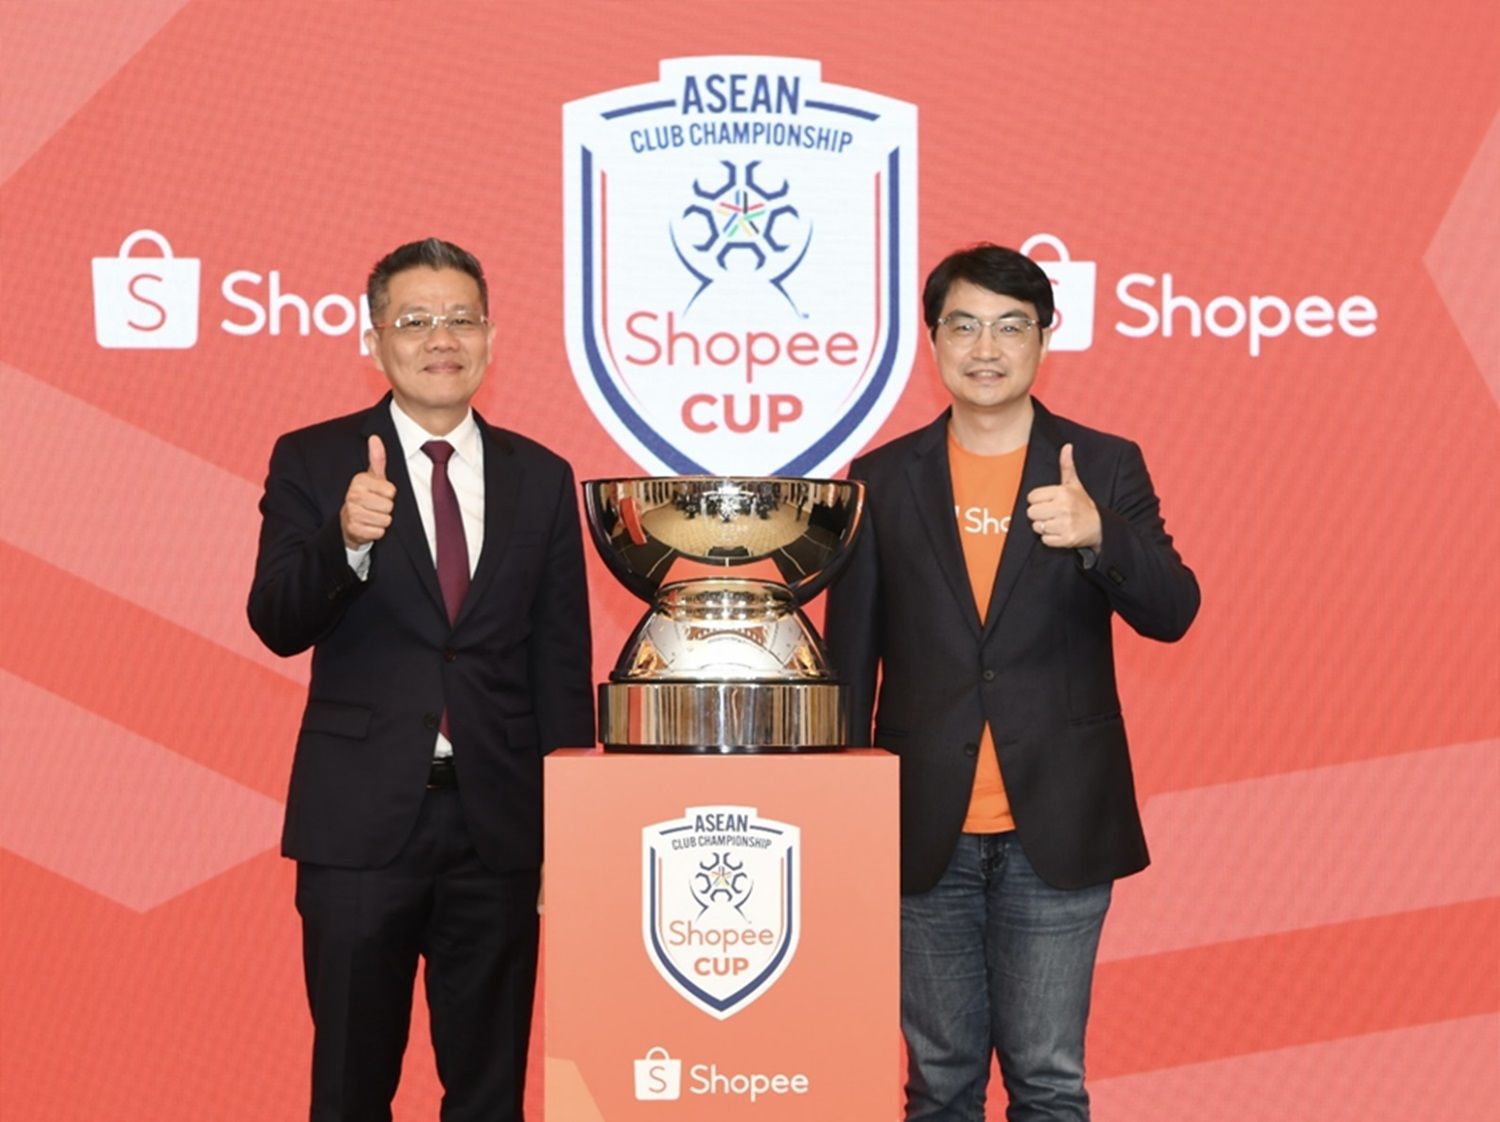 Shopee Cup ASEAN Club Championship Segera Digelar, Kompetisi Sepak Bola Antarklub Tertinggi di Asia Tenggara.